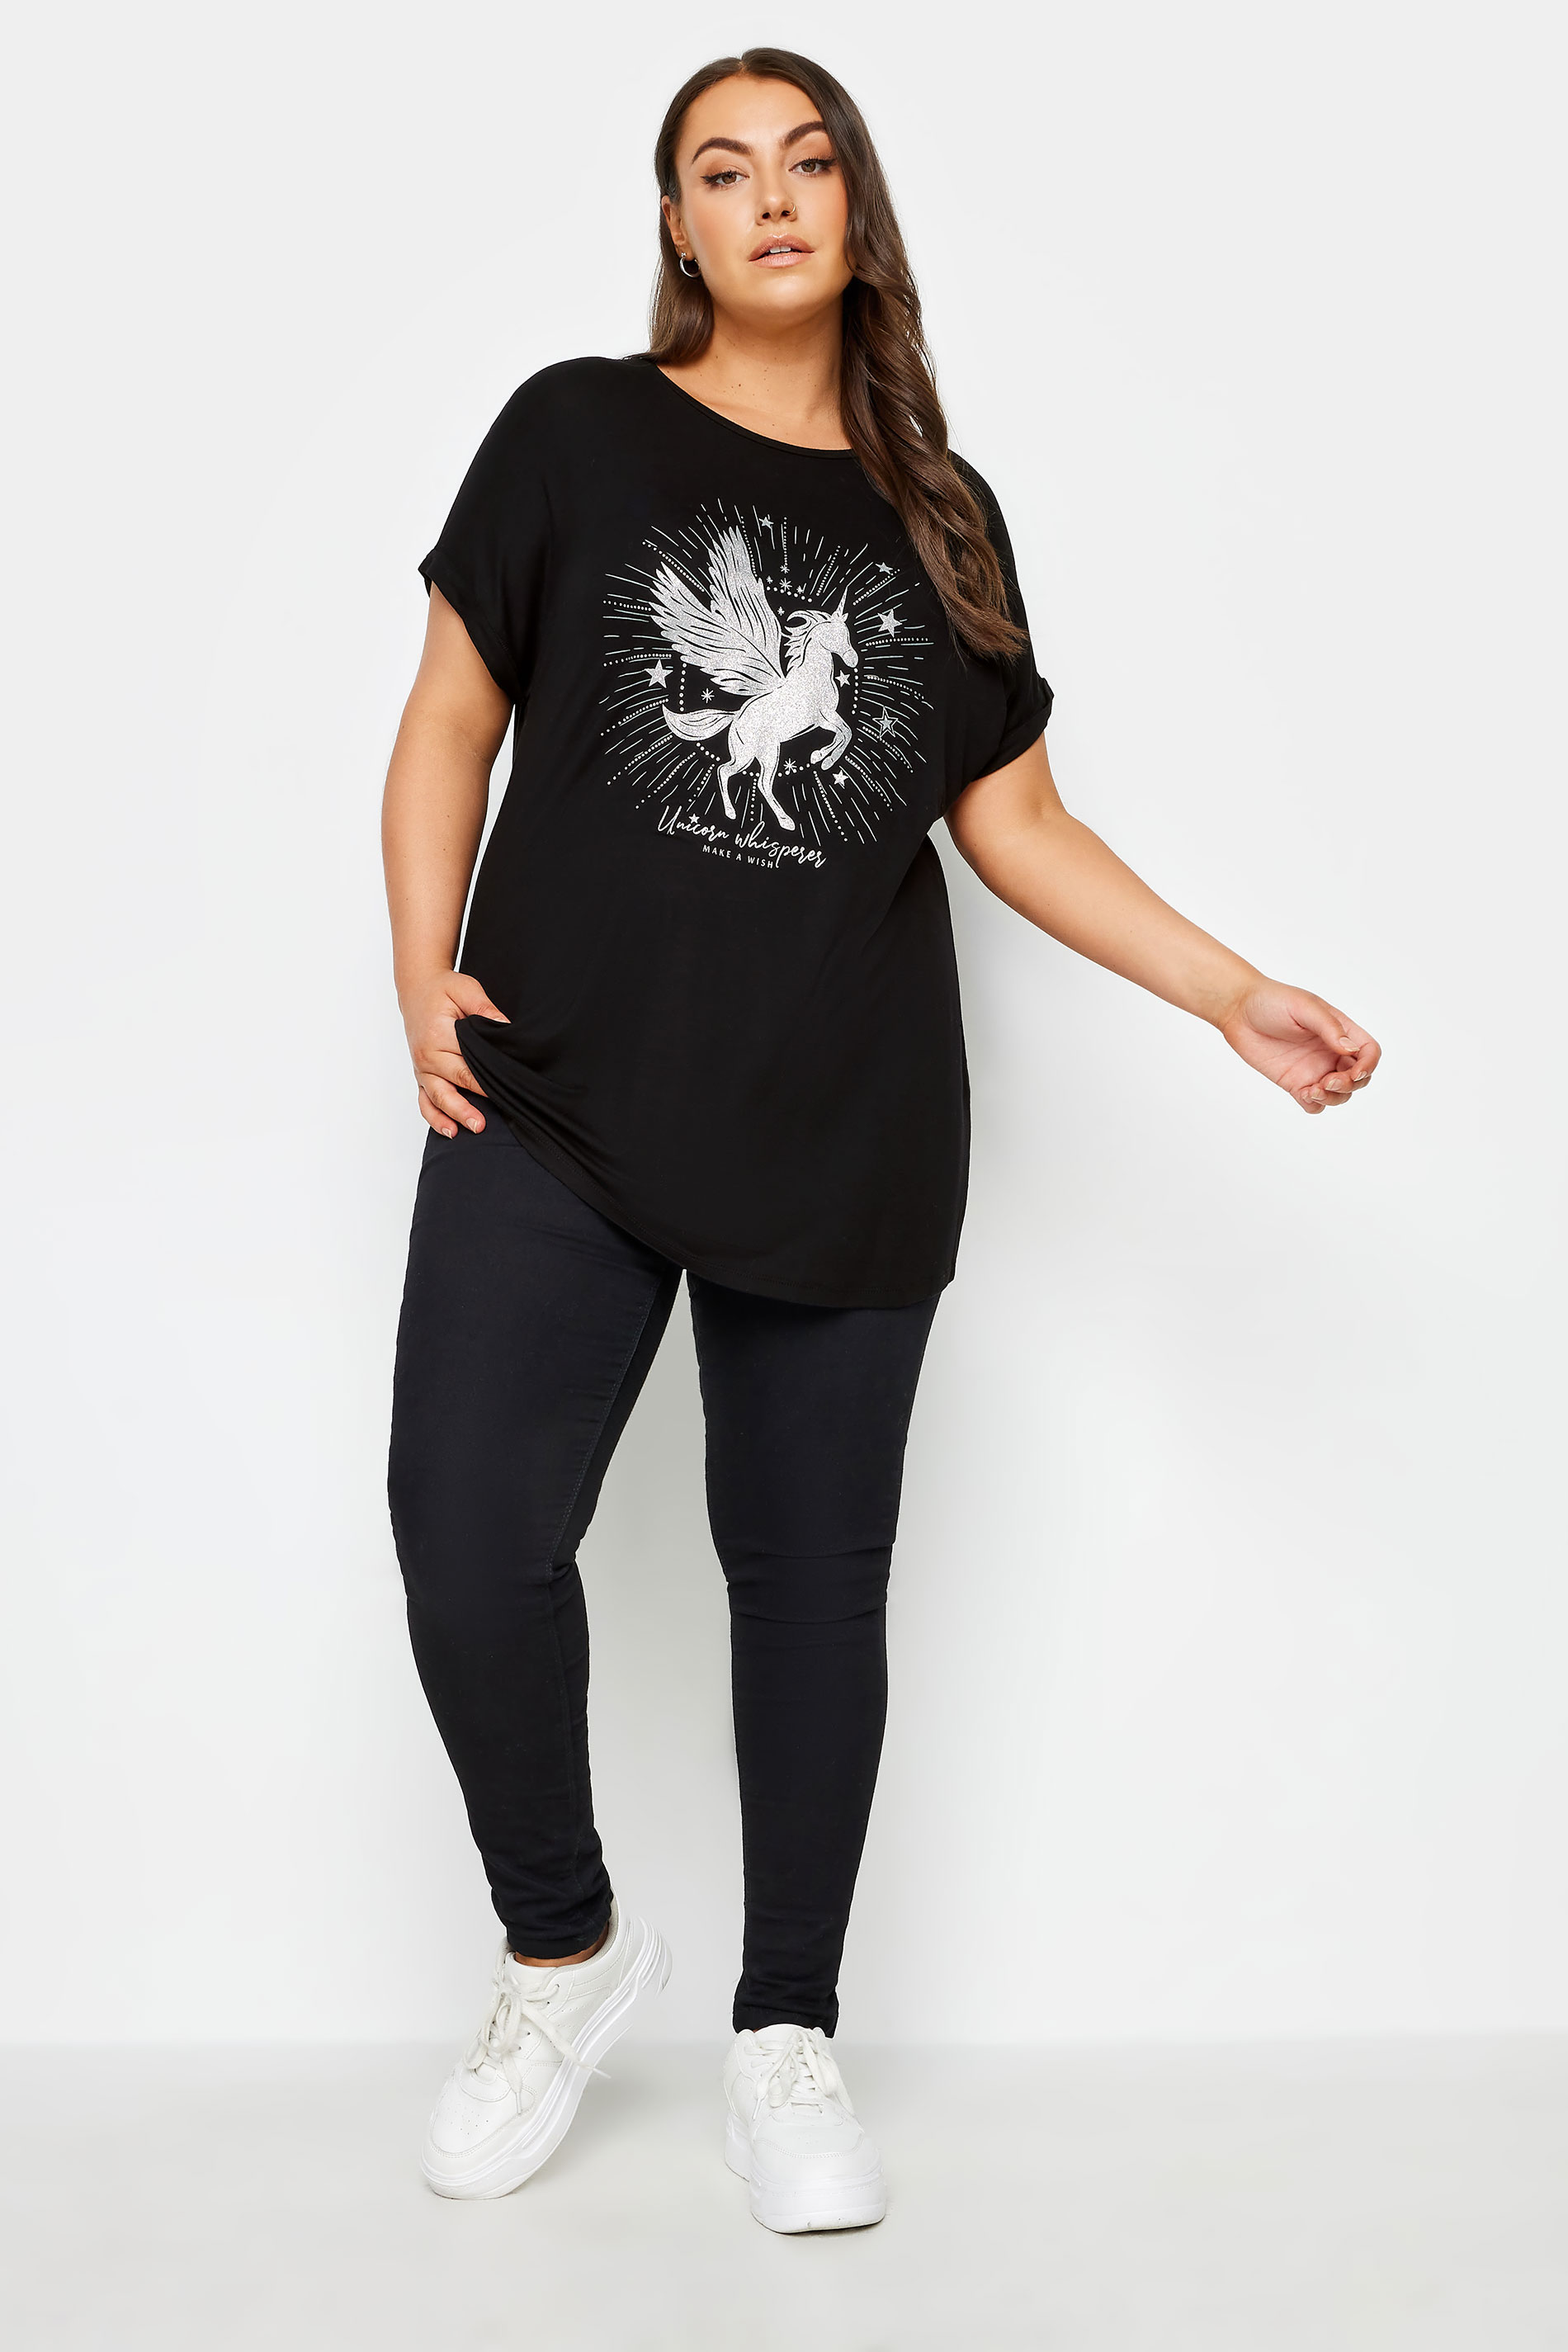 YOURS Plus Size Black Unicorn Design Glitter Embellished T-Shirt | Yours Clothing 2